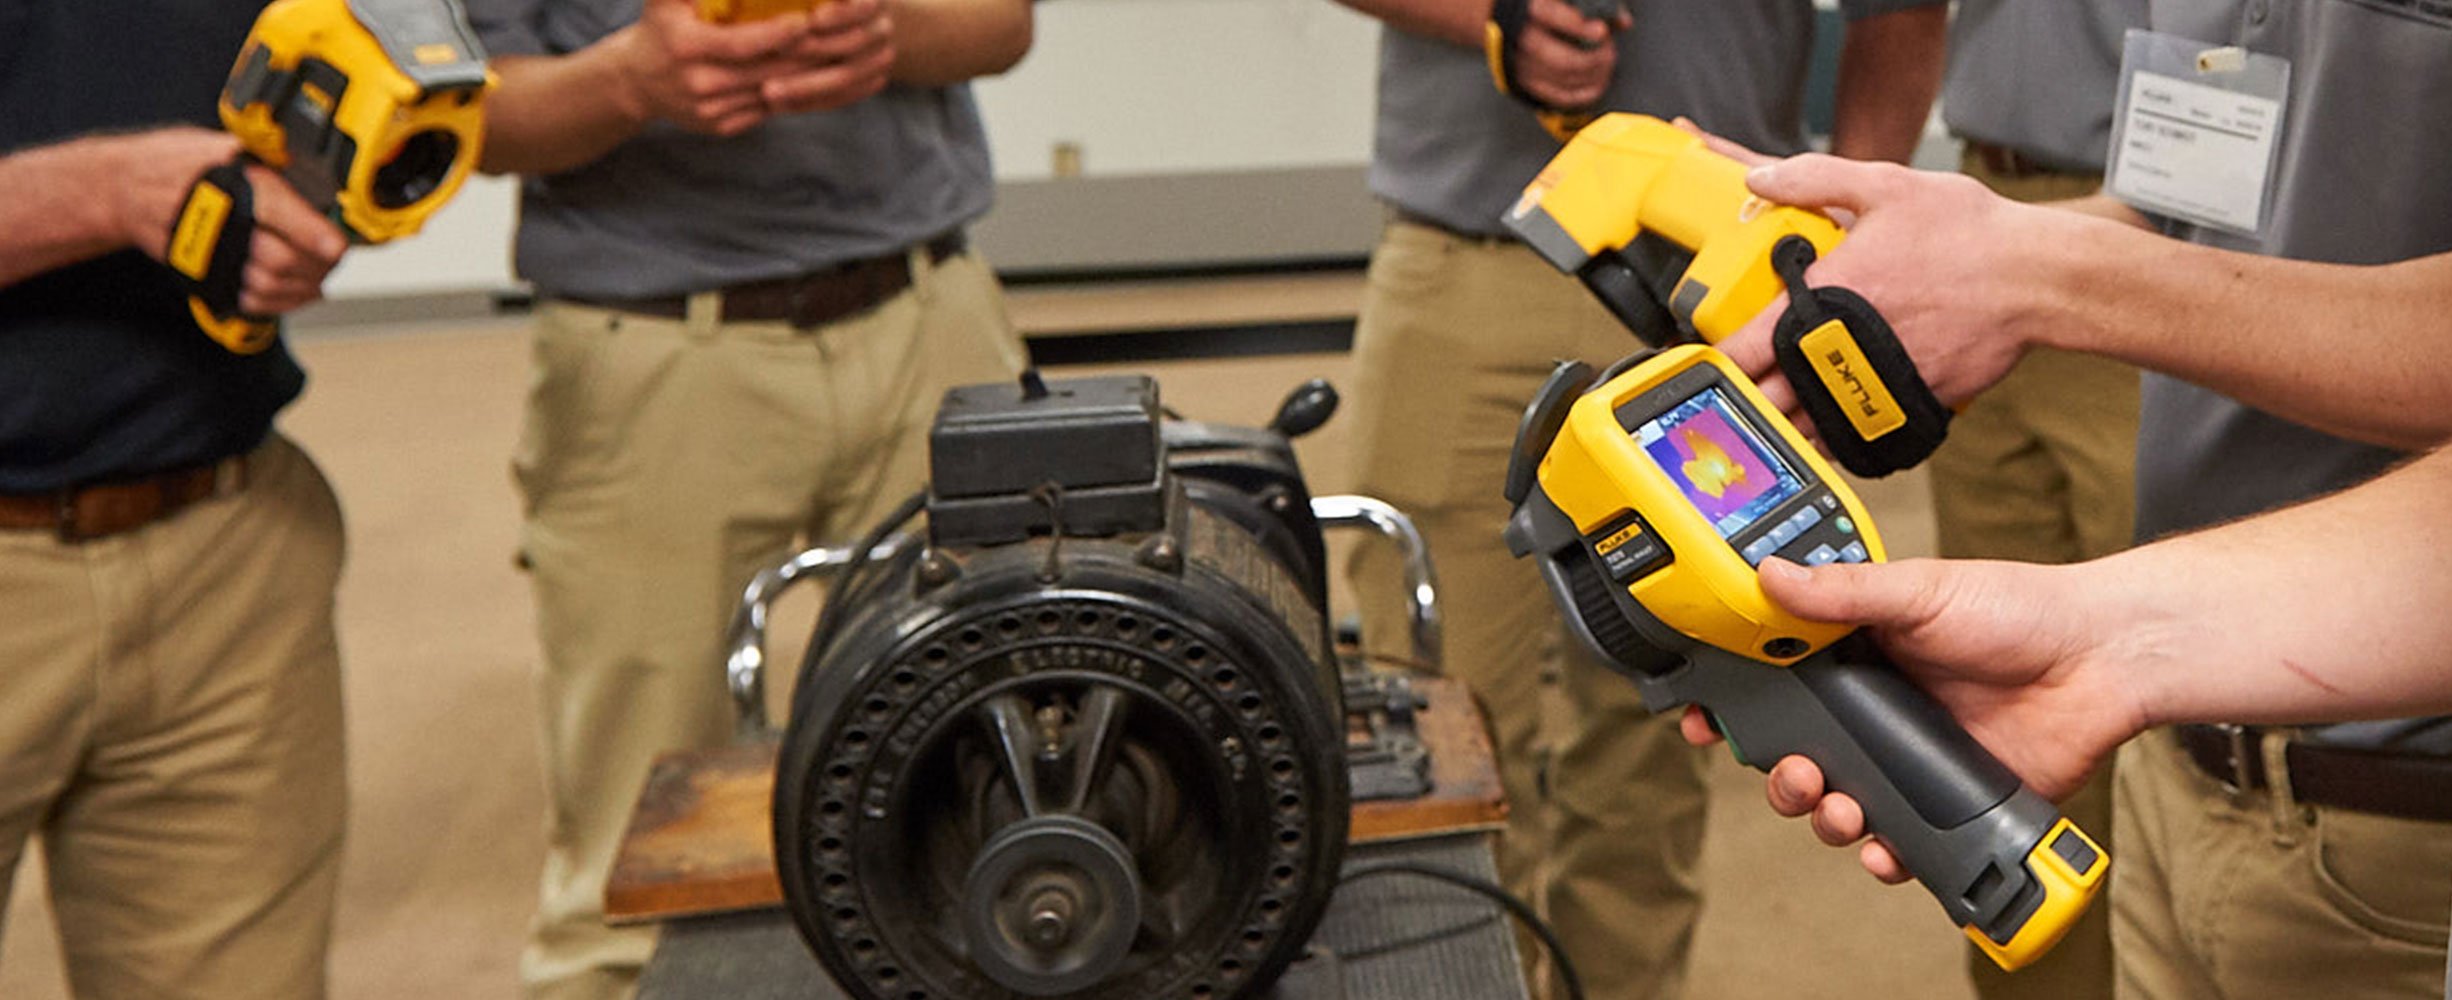 Alcuni studenti ispezionano un motore con termocamere a infrarossi Fluke durante una sessione di formazione